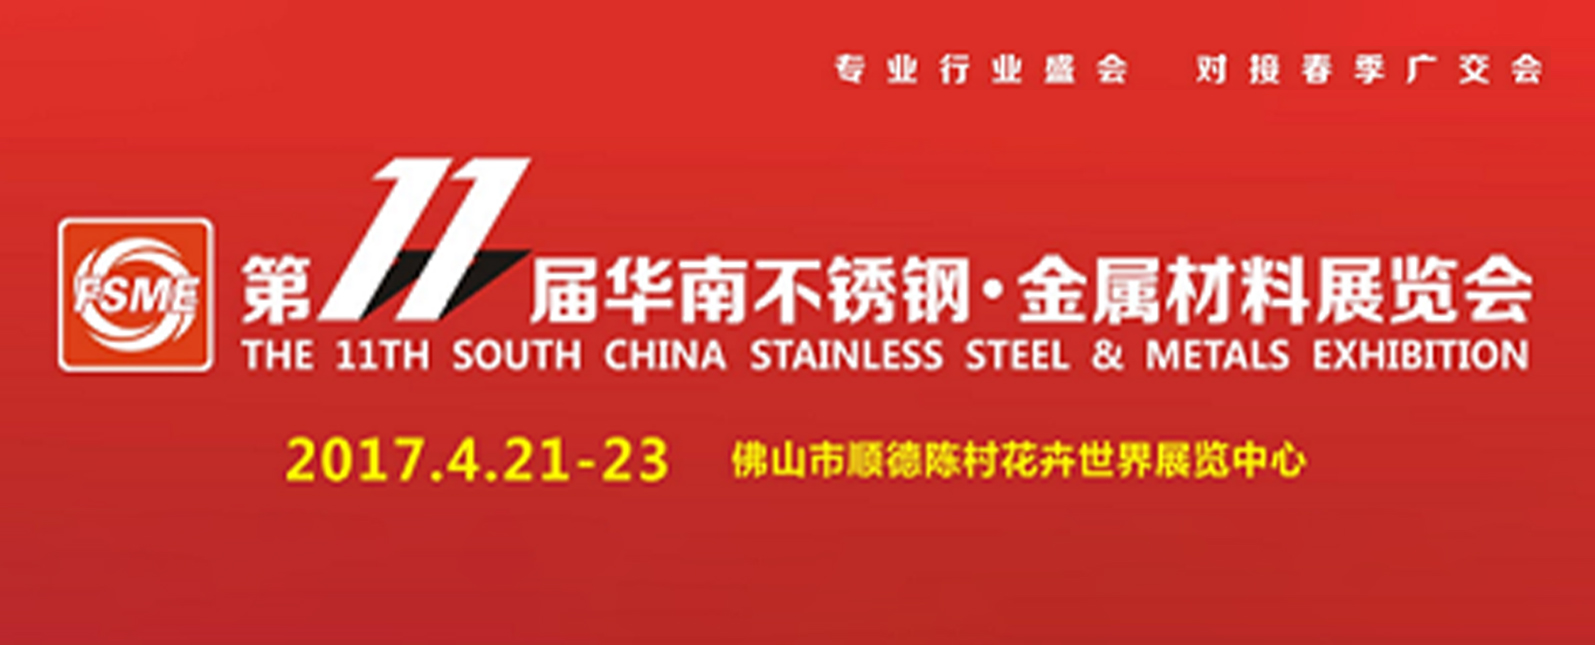 浪声仪器邀您参加第11届华南不锈钢、金属材料展